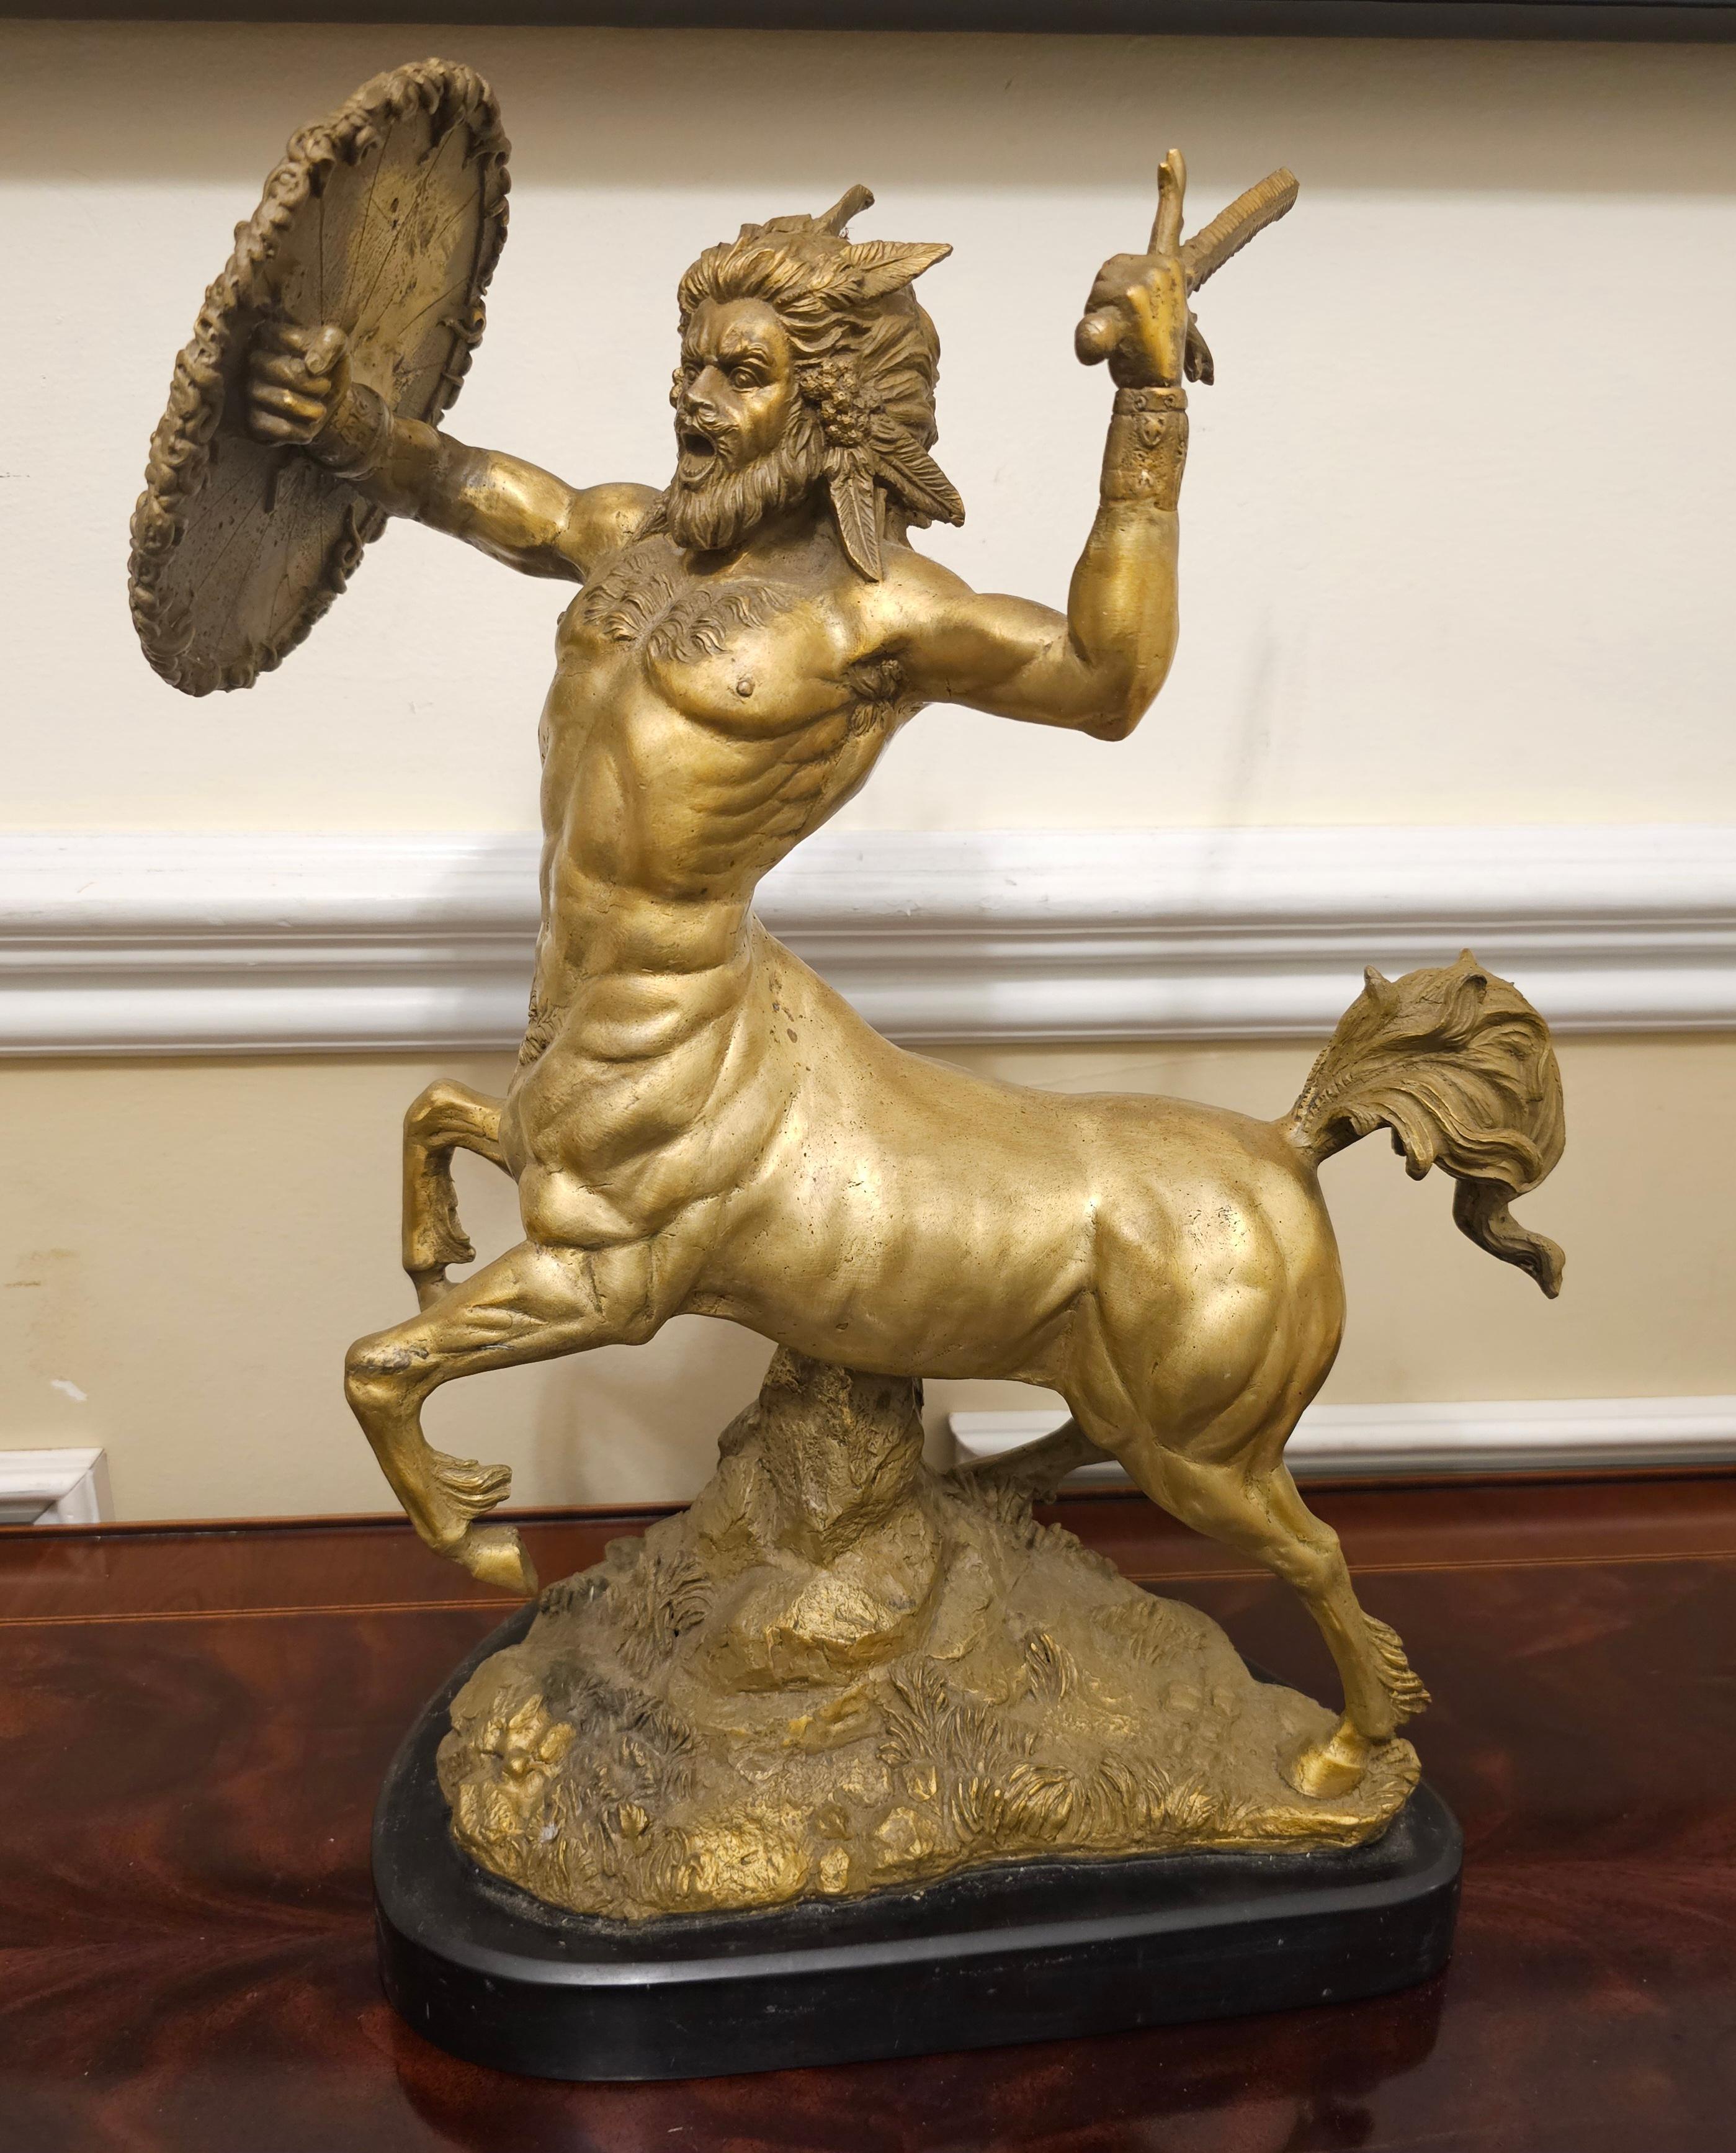 Superbe sculpture en bronze de Dore représentant un centaure en train de se battre sur un terrain de football  Socle en ardoise. Le puissant Centaure sort tout droit du royaume de la mythologie grecque en brandissant une épée et un bouclier de